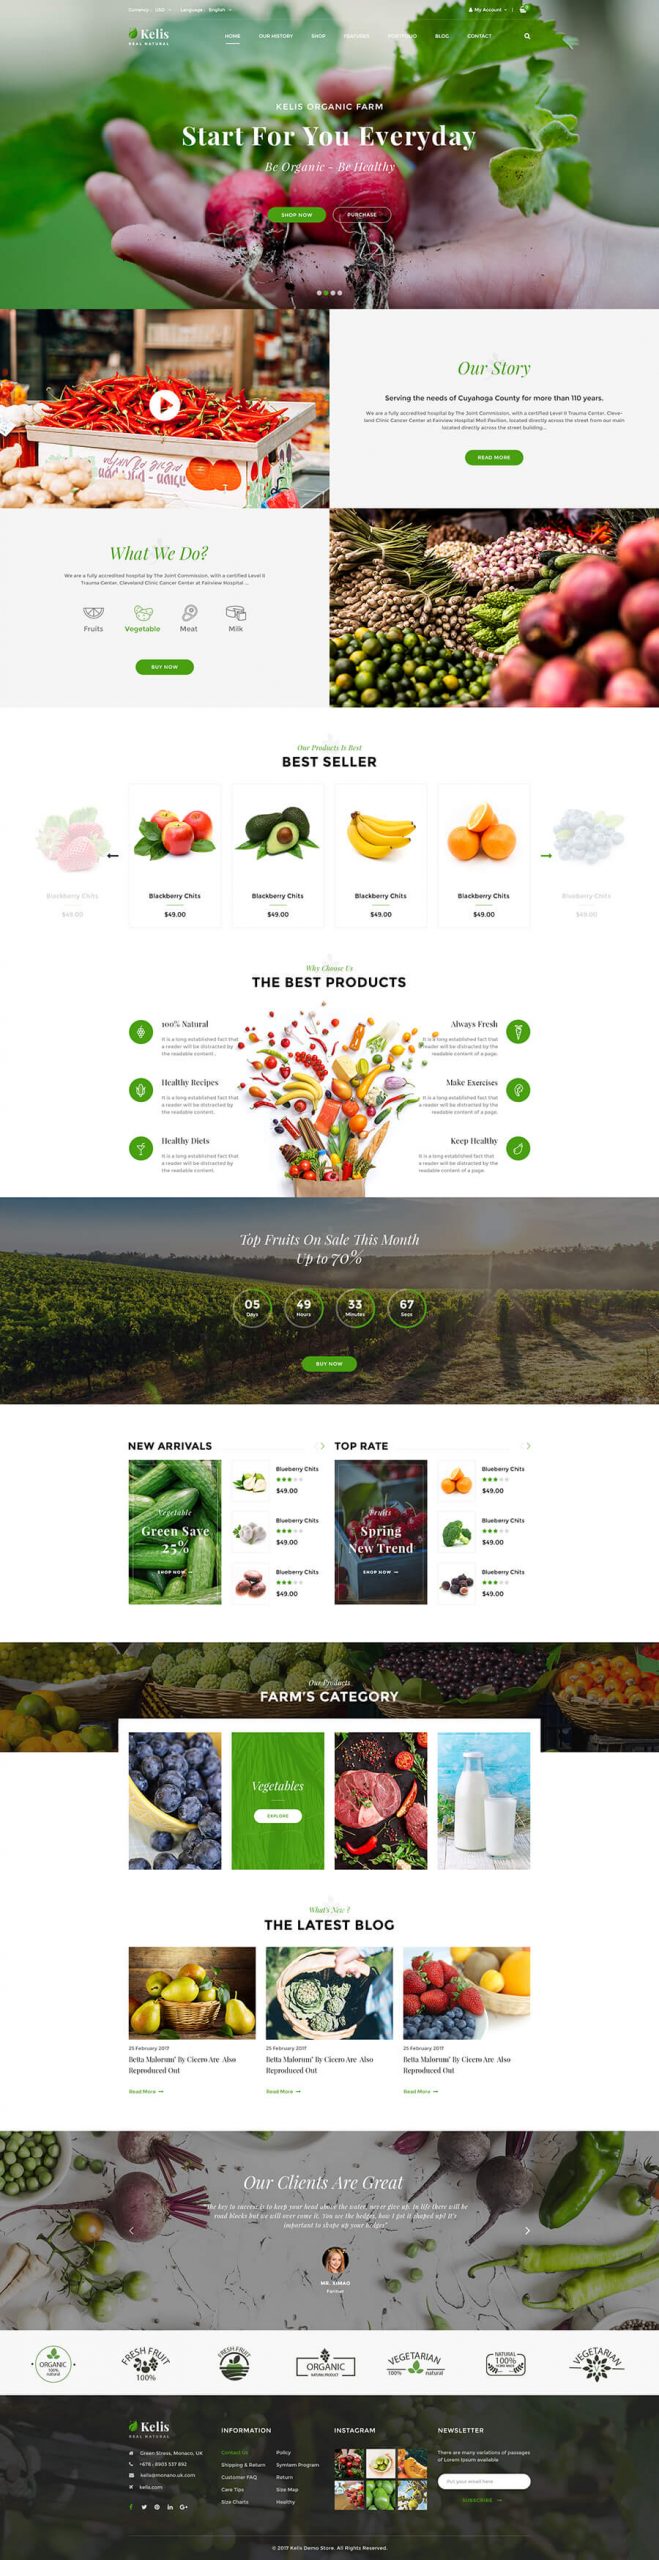 thiết kế website xuất khẩu nông sản, thiết kế website bán trái cây, website bán nông sản chuyên nghiệp